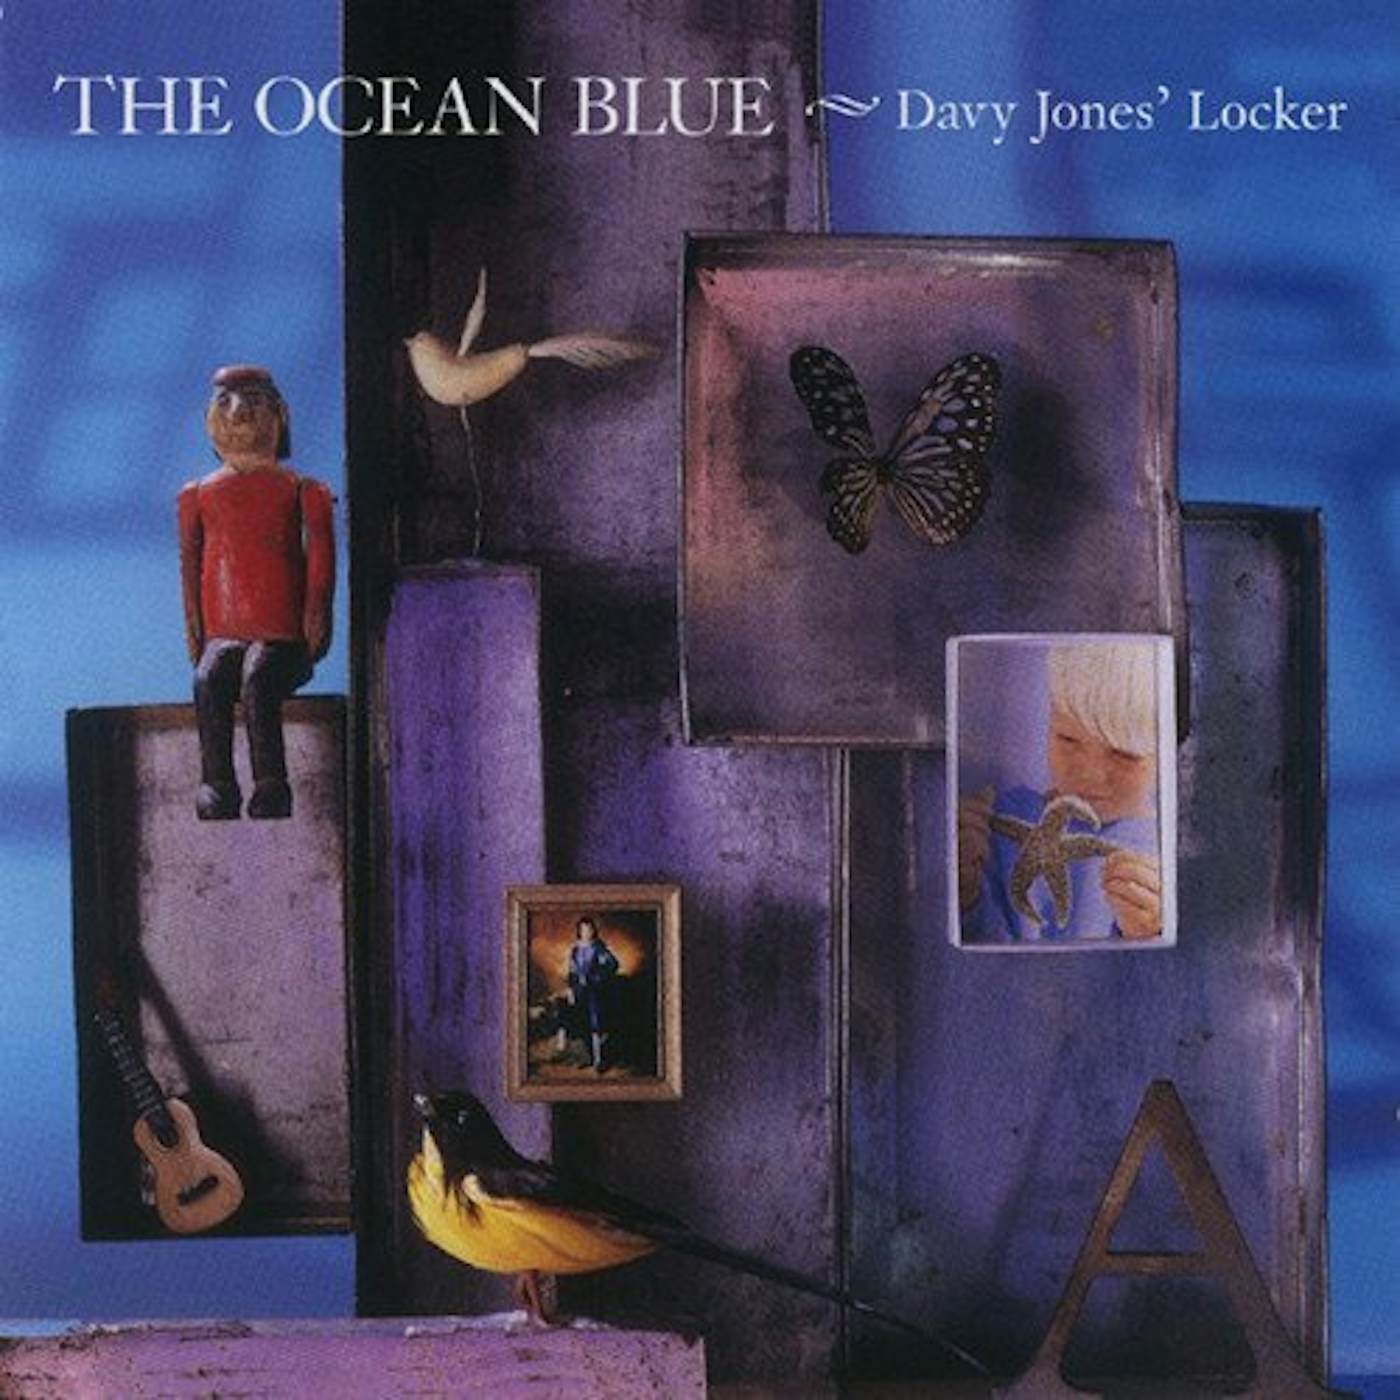 The Ocean Blue Davy Jones' Locker Vinyl Record